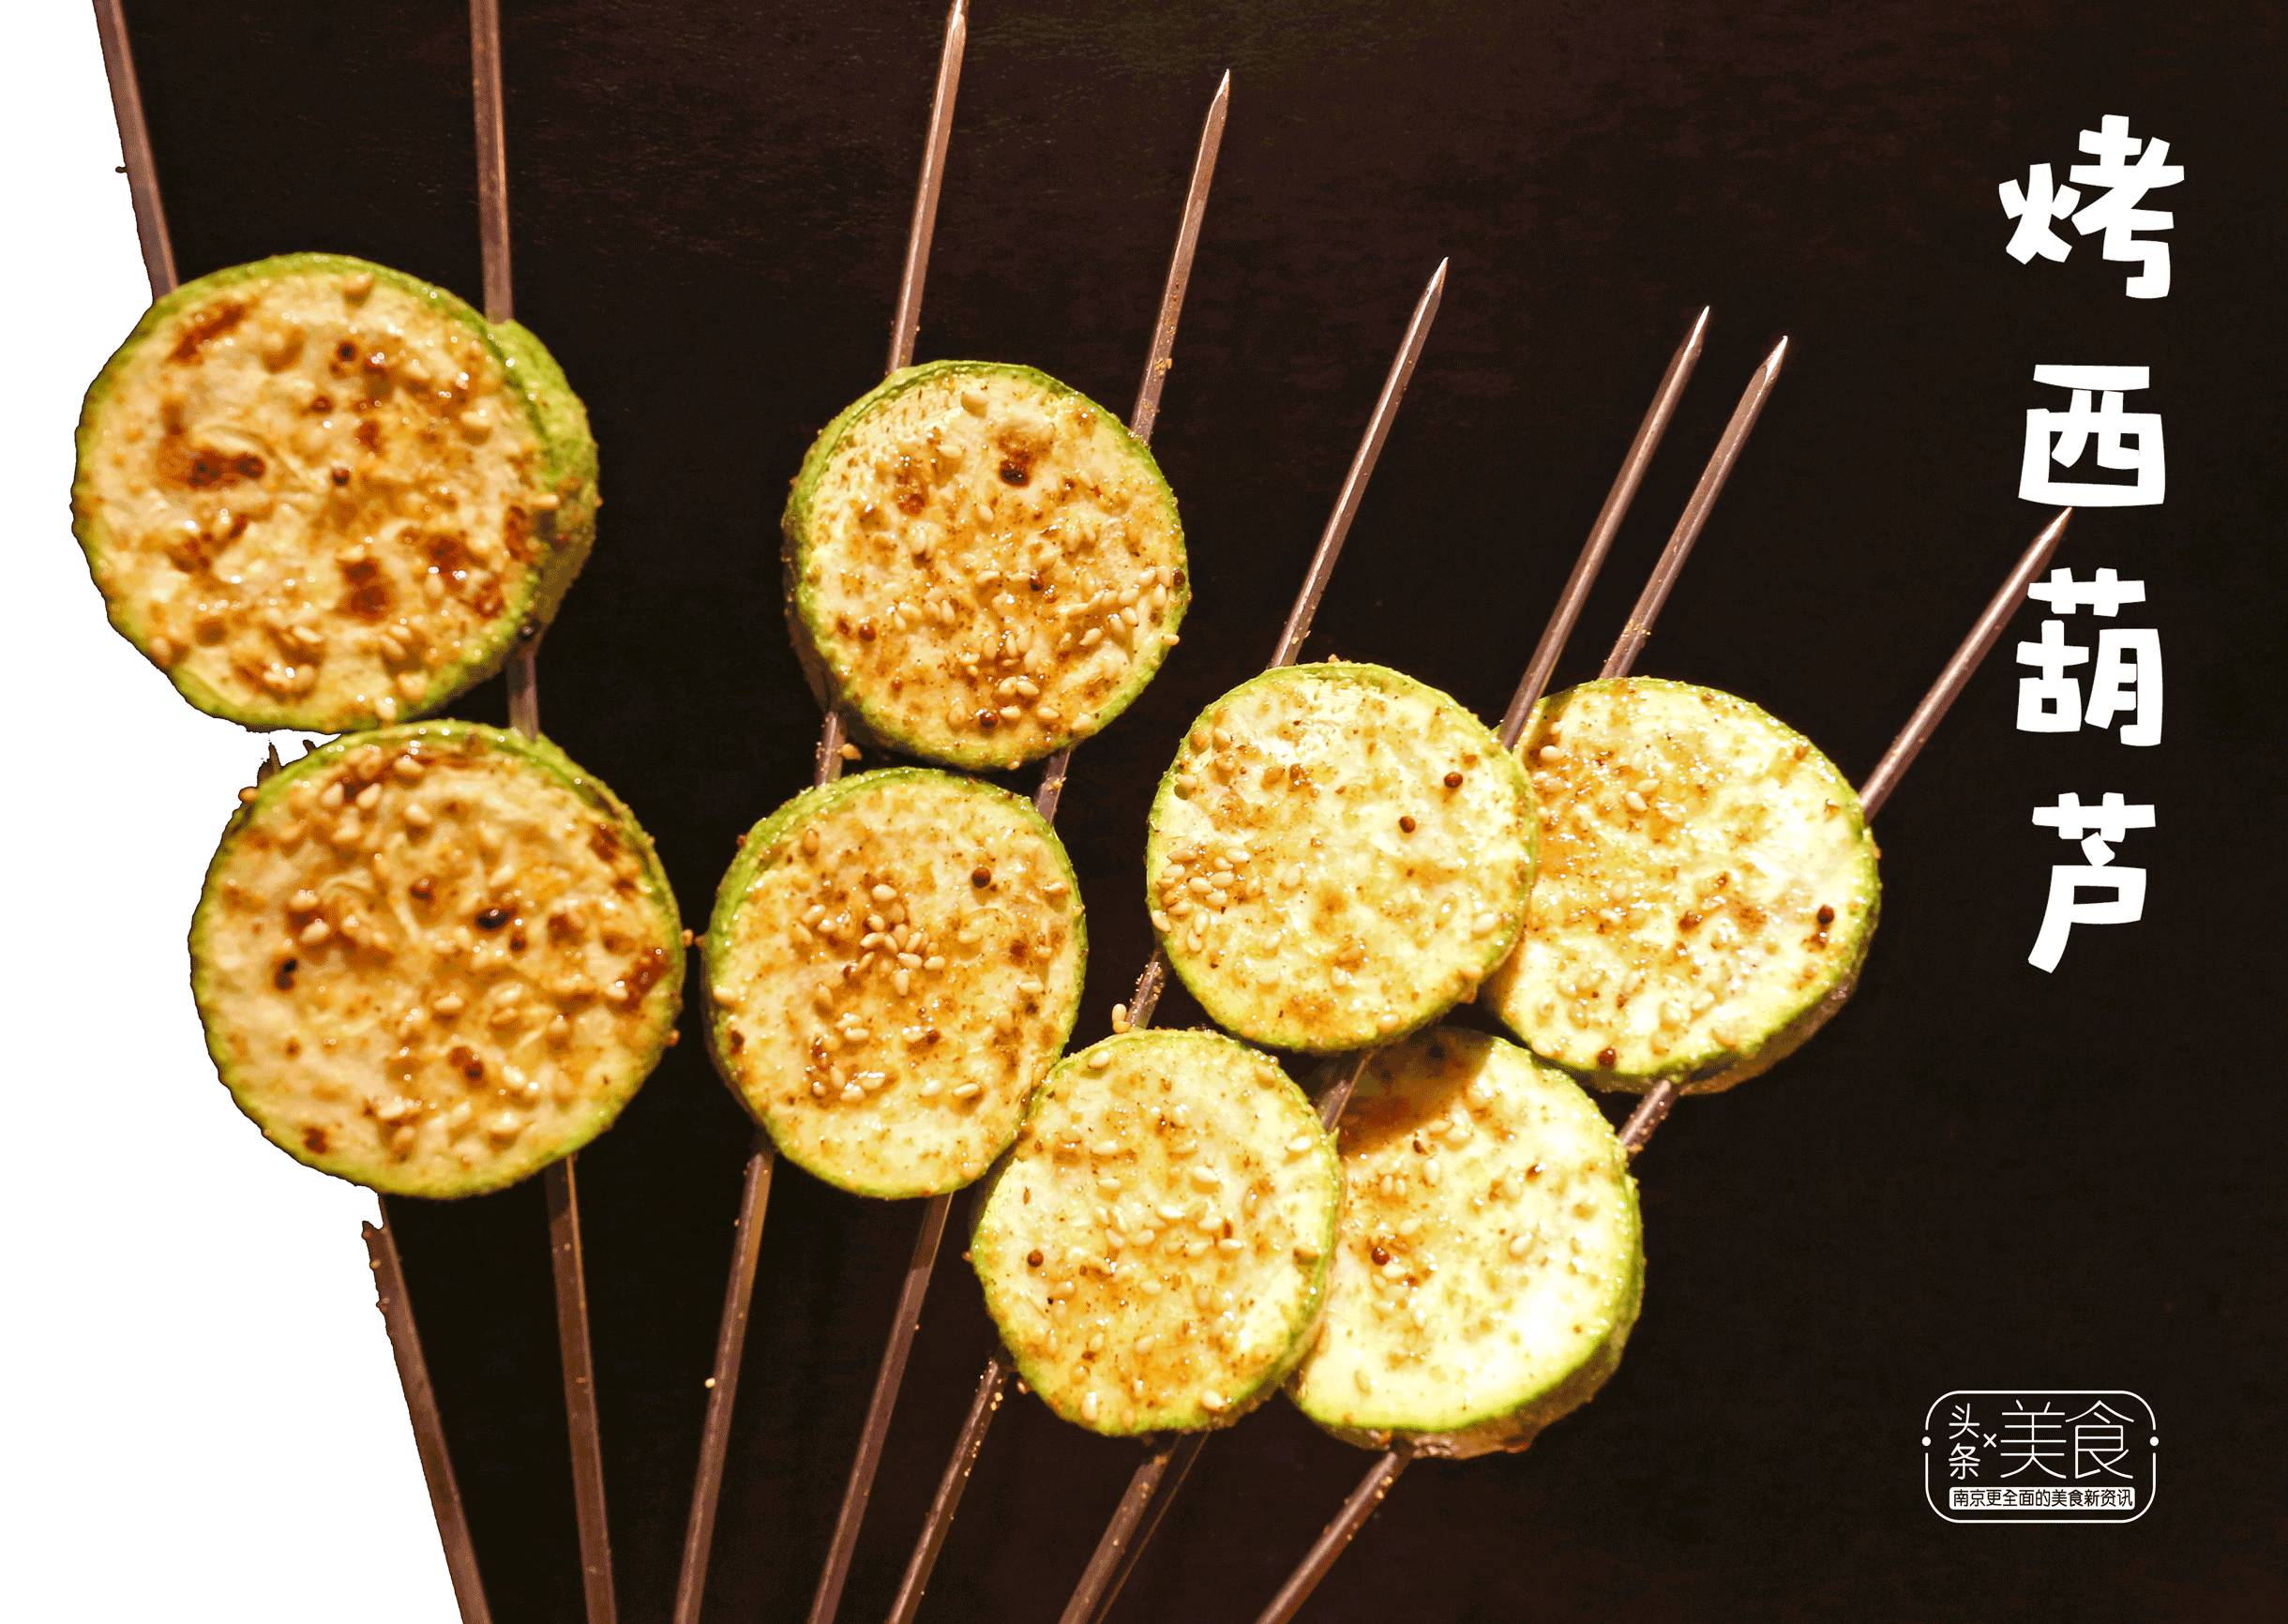 烤西葫芦在火匠可以尝到你人生的很多第一次连蔬菜都弄新花样!